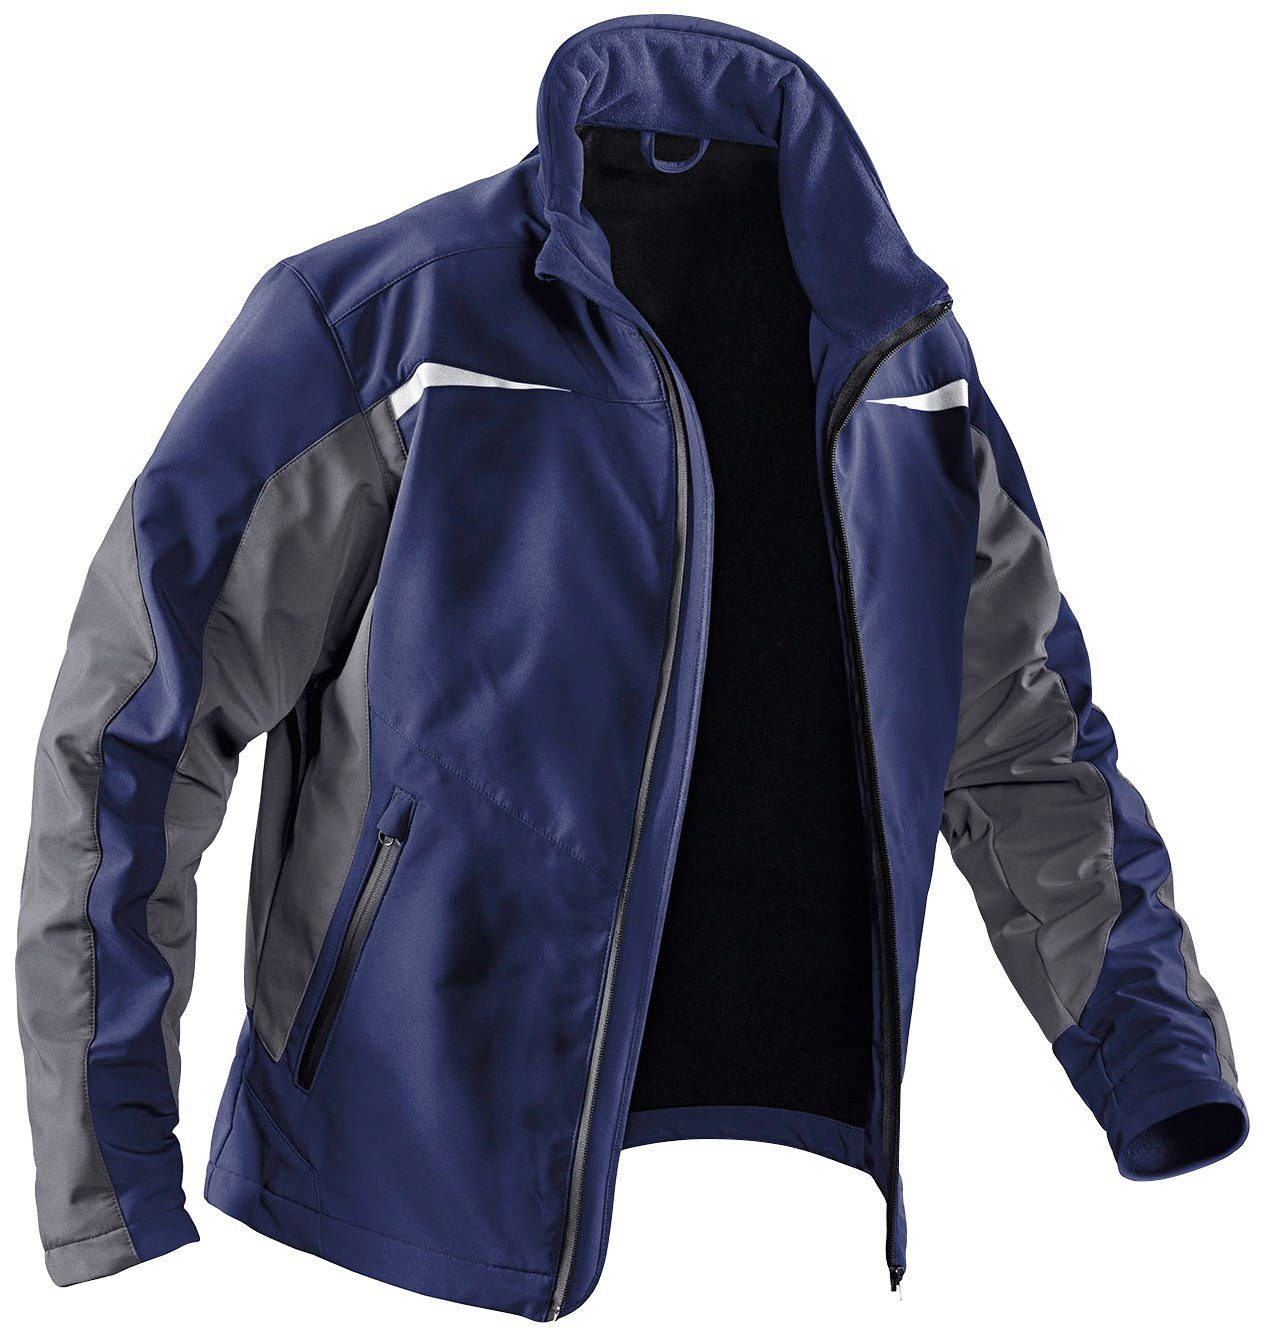 Jacke dunkelblau-anthrazit mit Softshell 4 Taschen, Arbeitsjacke Kübler winddicht, wasserabweisend